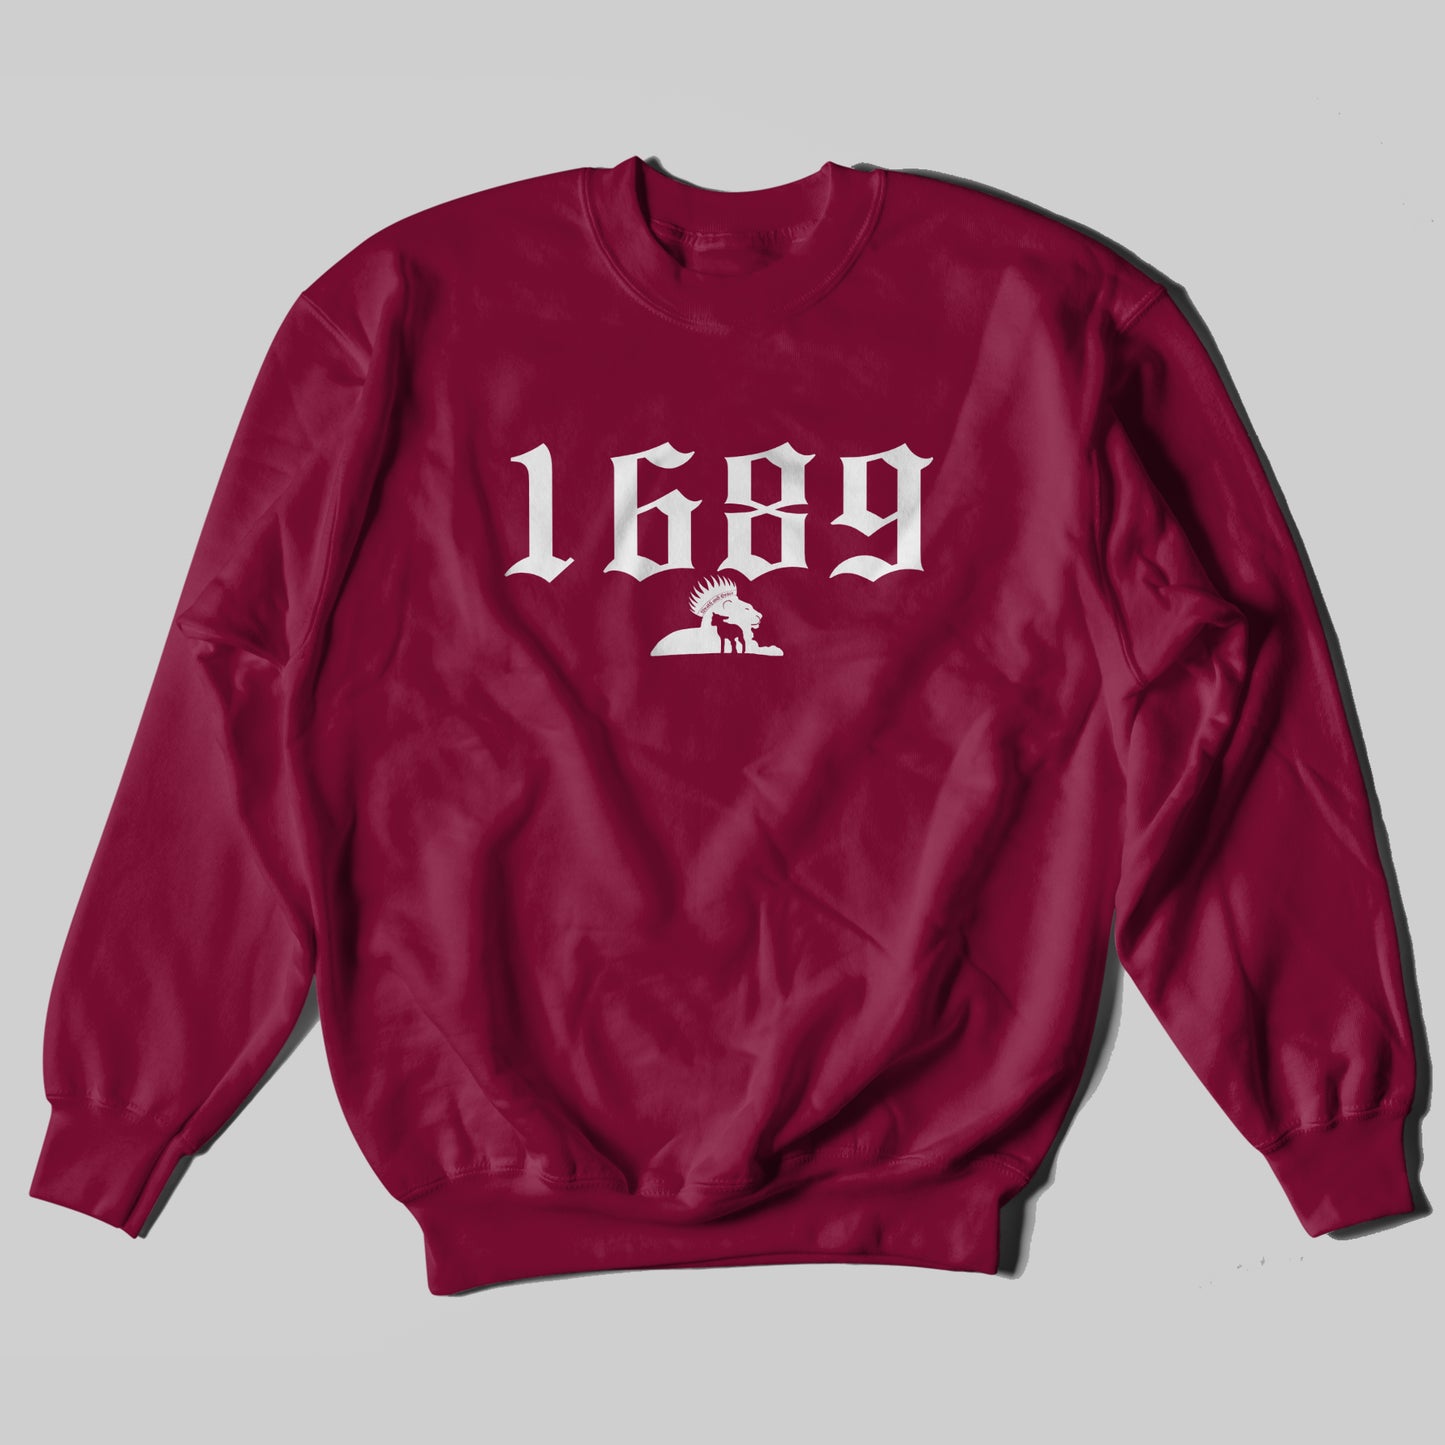 1689 - Sweatshirt